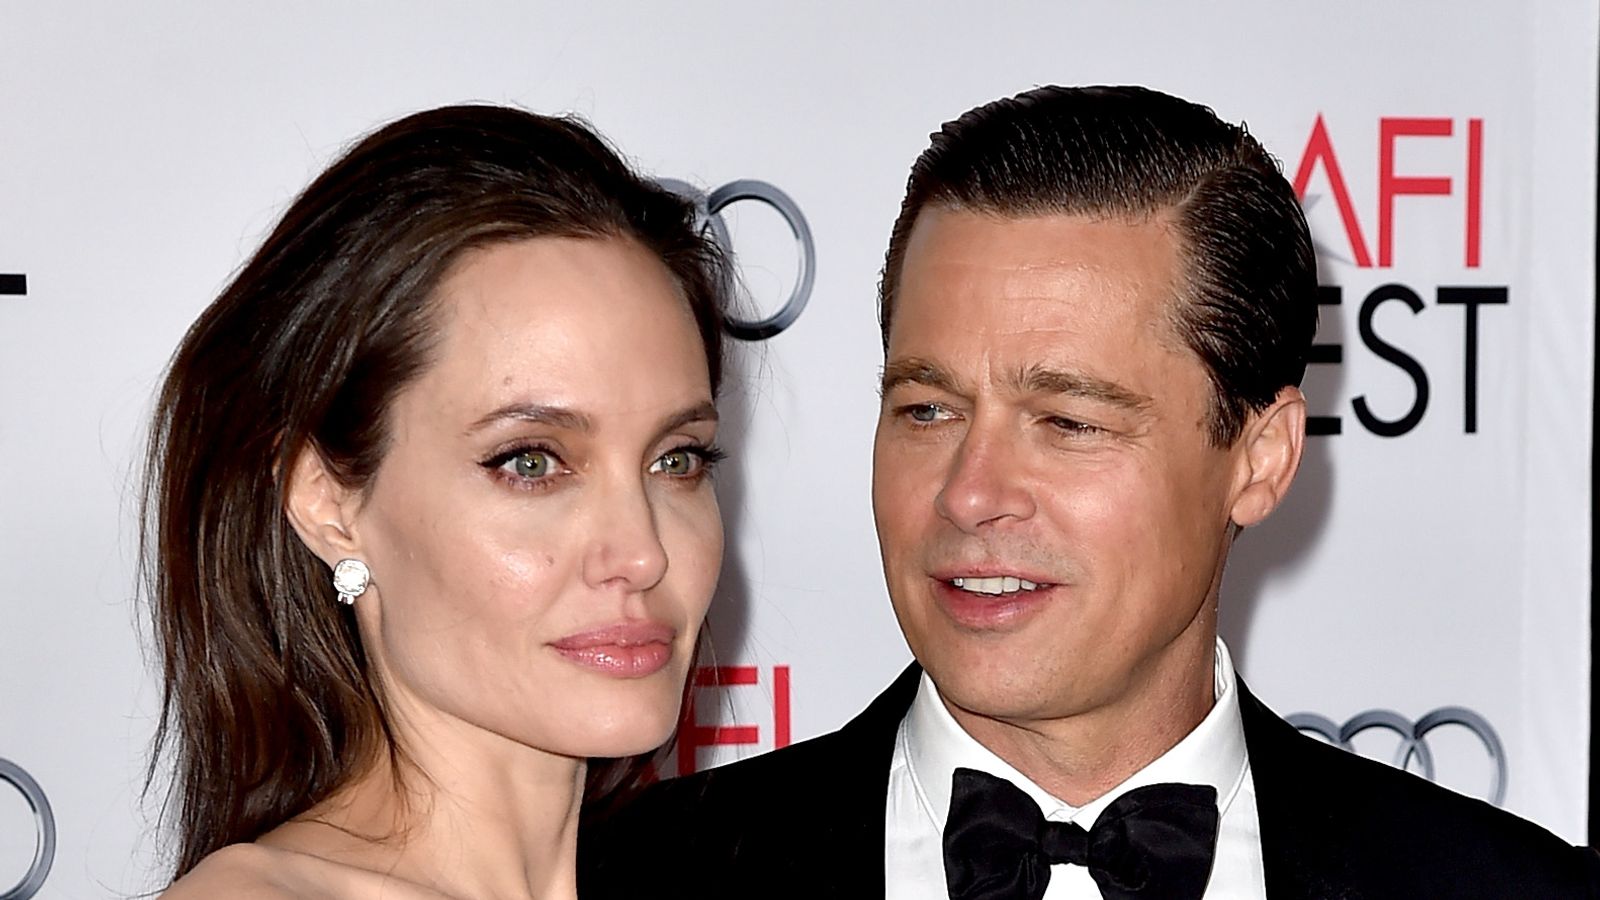 Angelina Jolie twierdzi, że Brad Pitt znęcał się nad nią i jej dziećmi „emocjonalnie i fizycznie”, nowe zeznania sądowe pokazują |  Ents & Arts News